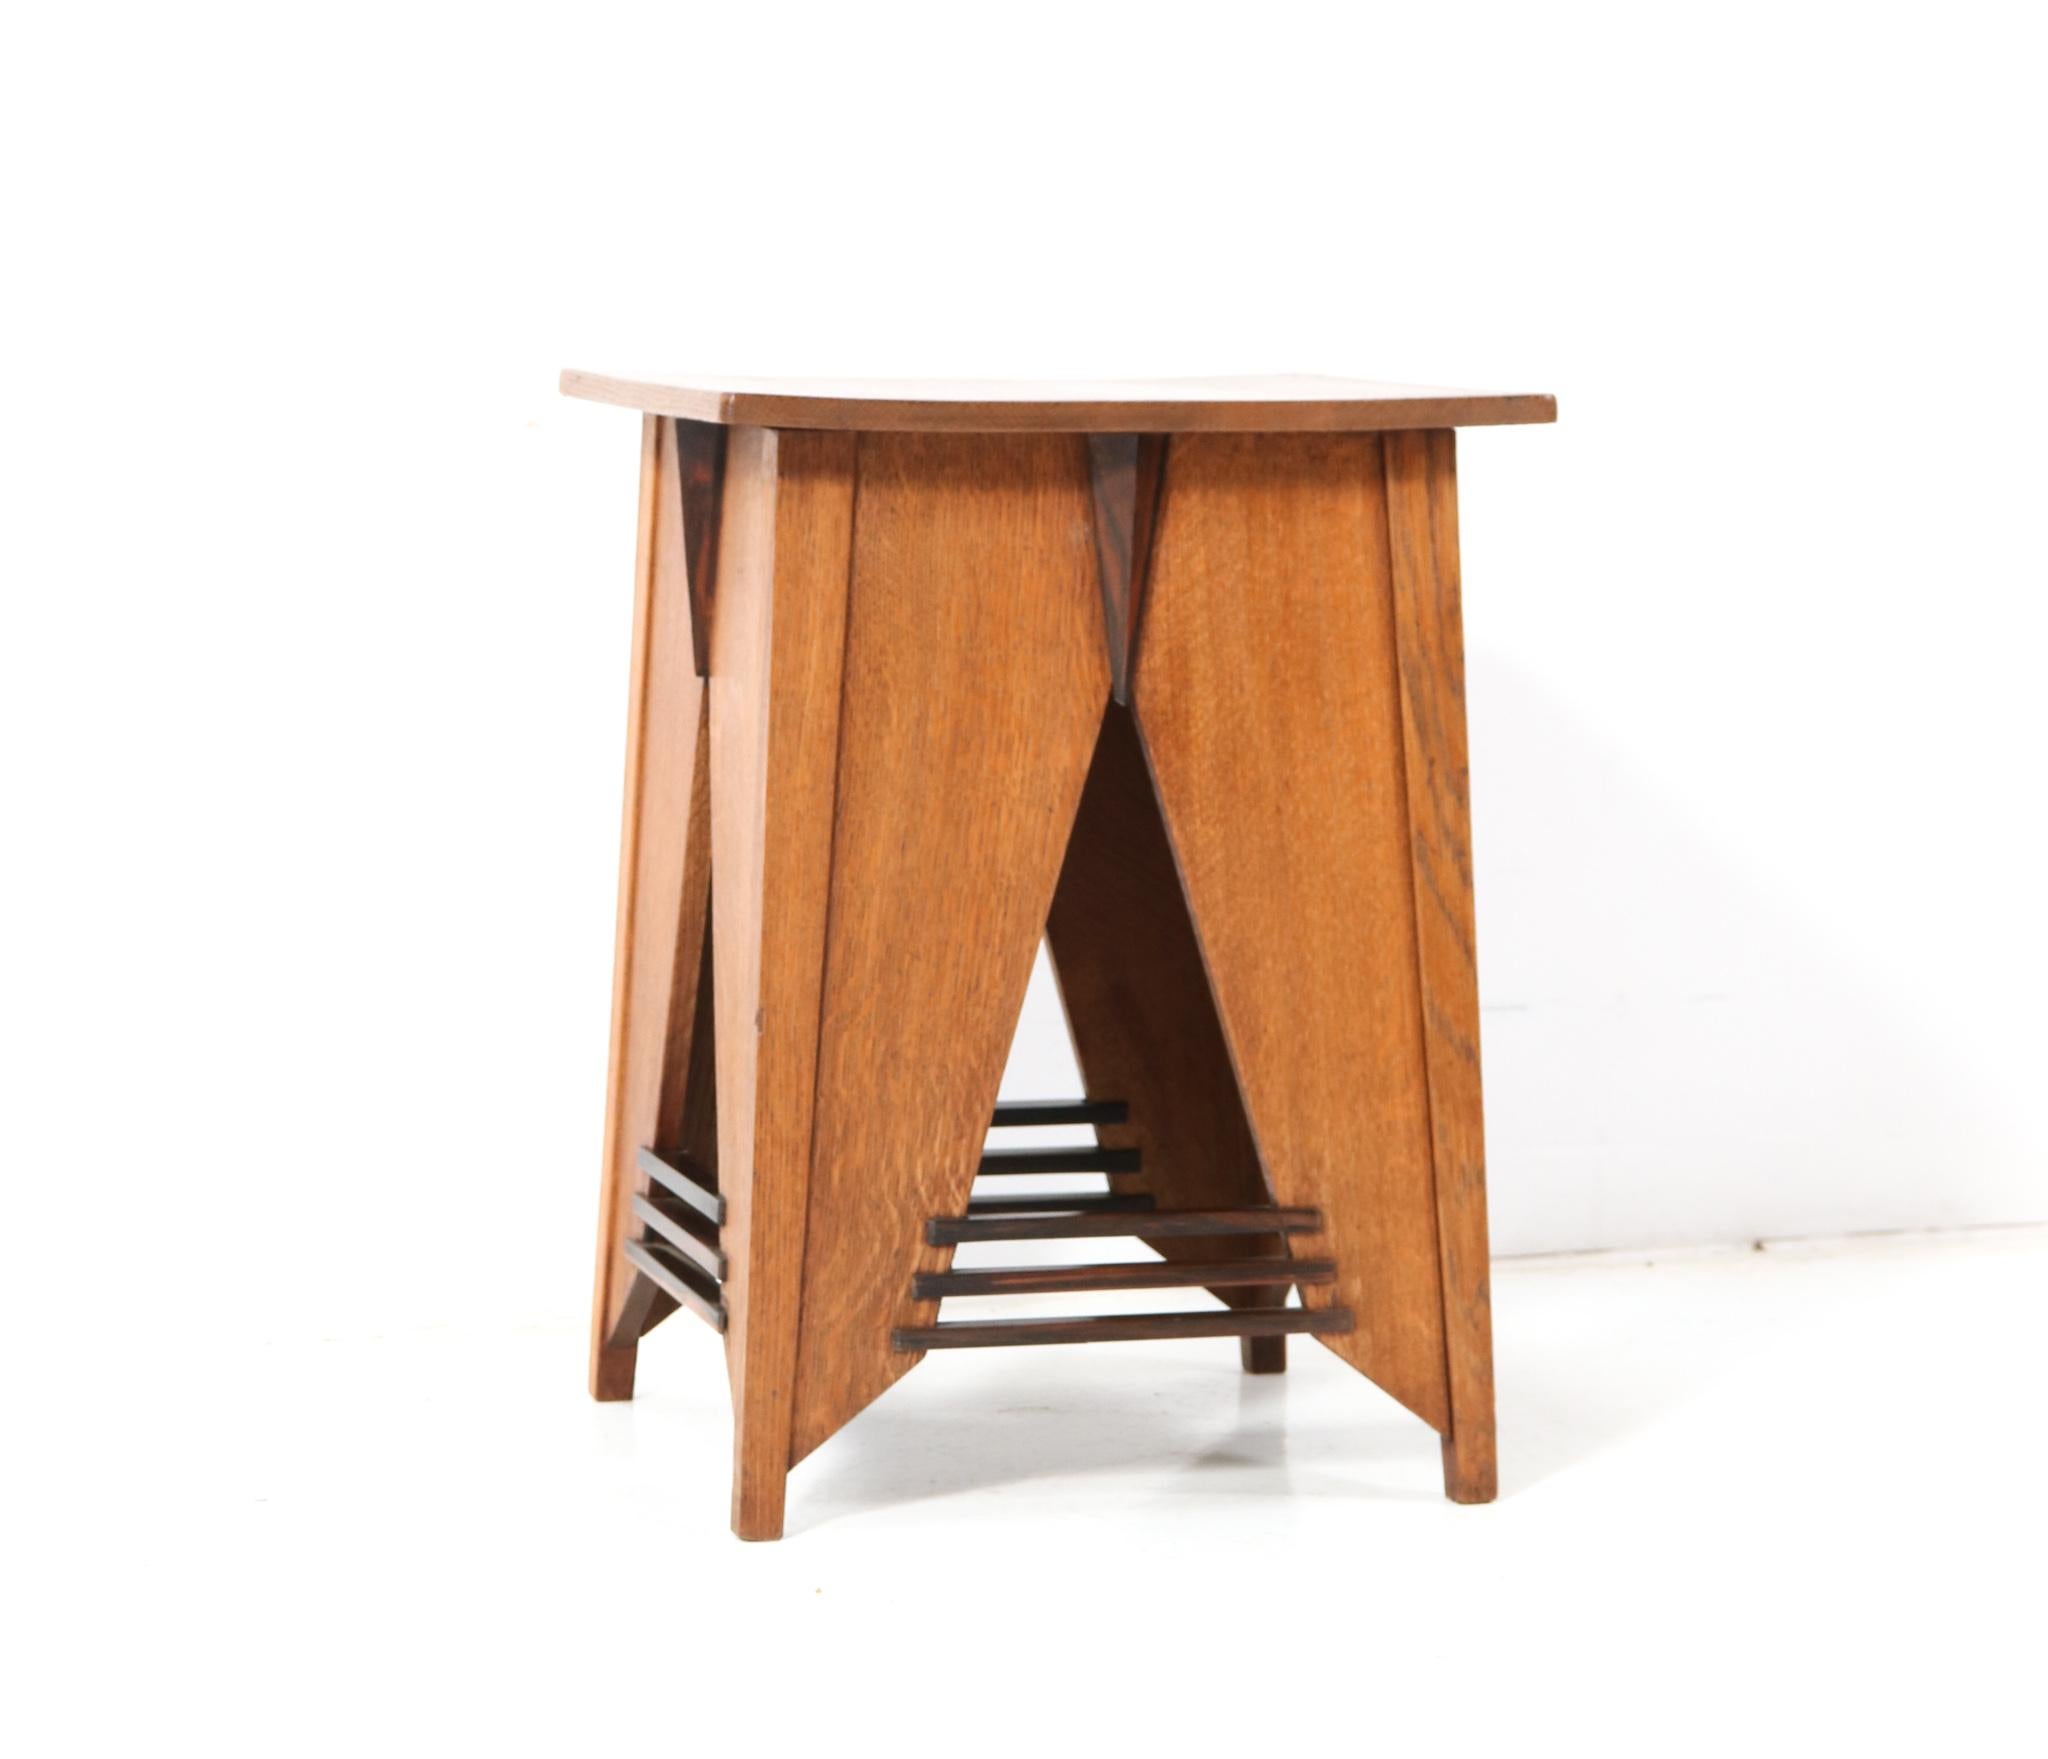 Two Oak Art Deco Modernist Side Tables by P.E.L. Izeren for De Genneper Molen For Sale 1